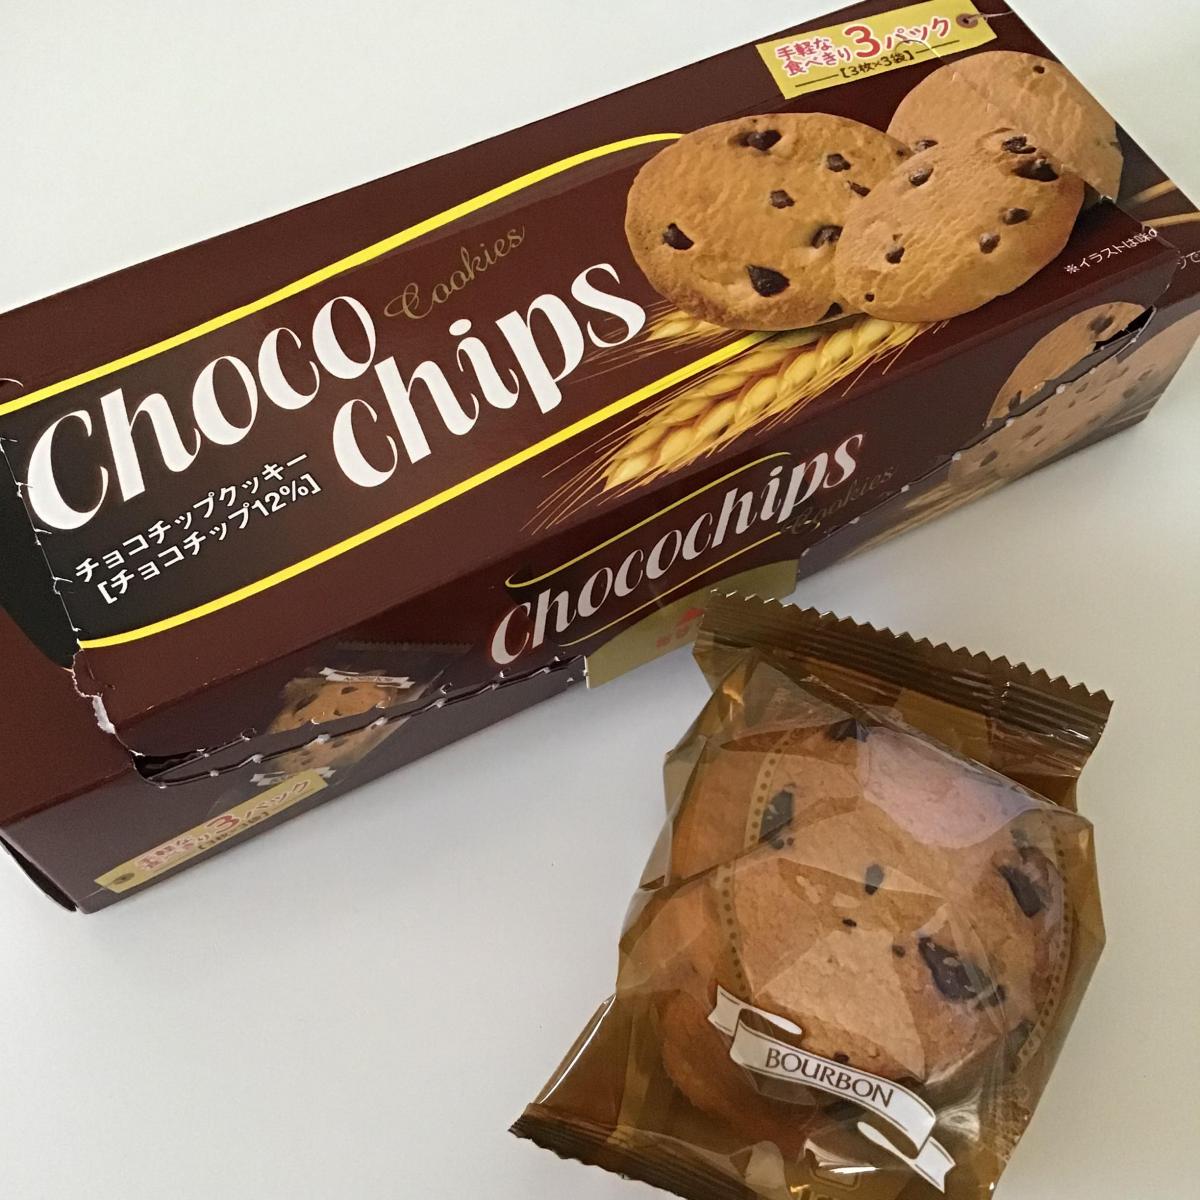 ブルボン チョコチップクッキーの商品ページ